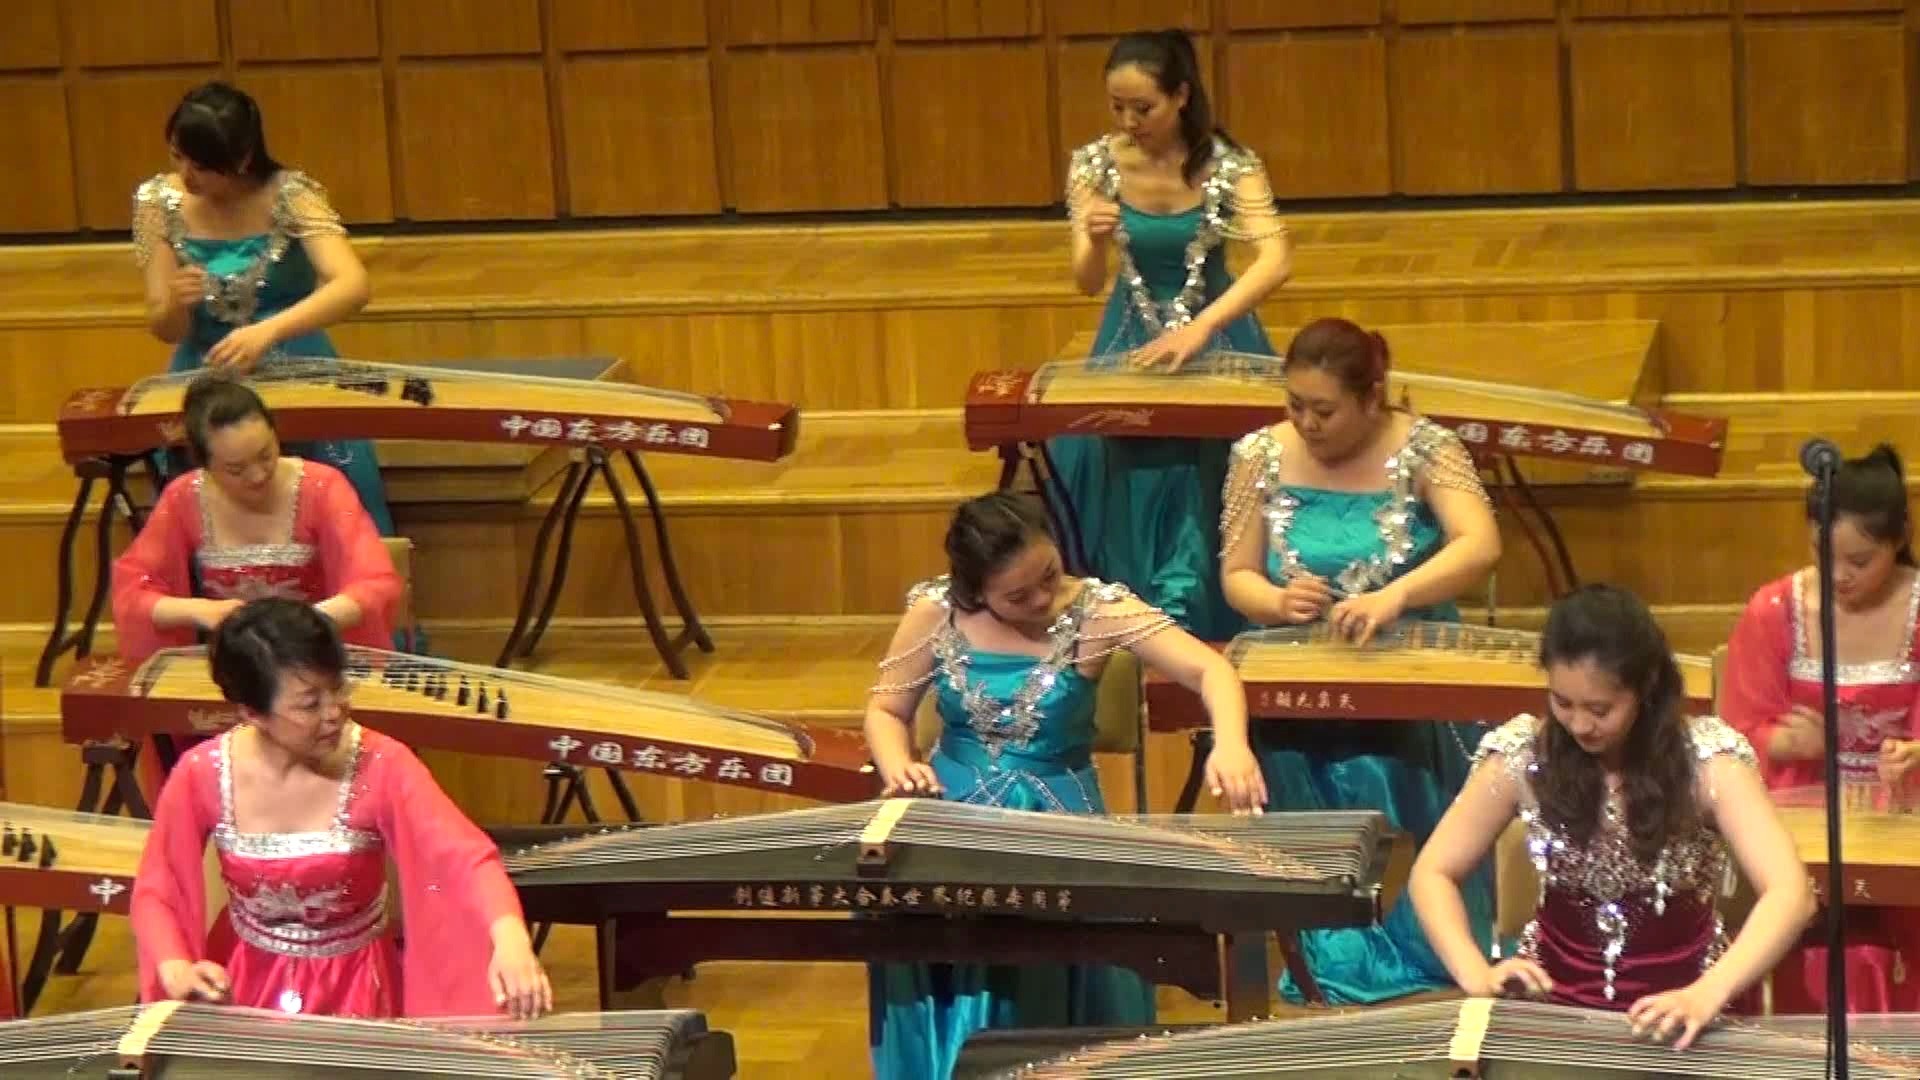 谁家乐团那么厉害？在李斯特音乐学院用中国乐器弹奏《匈牙利舞曲》啊？